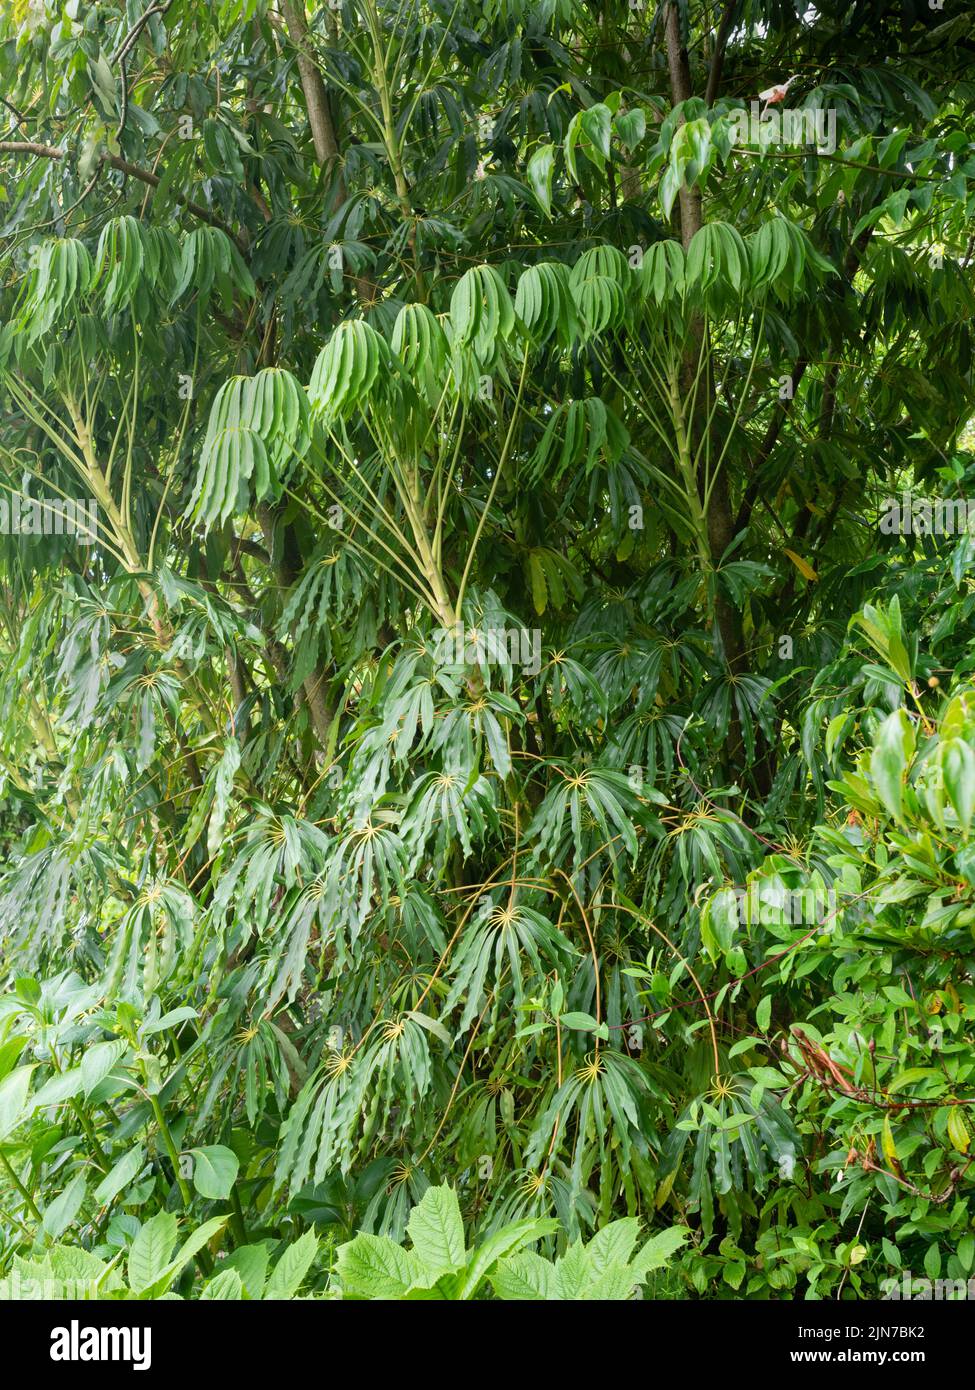 Tropisch aussehendes, palmates, immergrüner Laub des Gartenhauses, Form des winterharten Regenschirmbaums, Schefflera taiwaniana Stockfoto